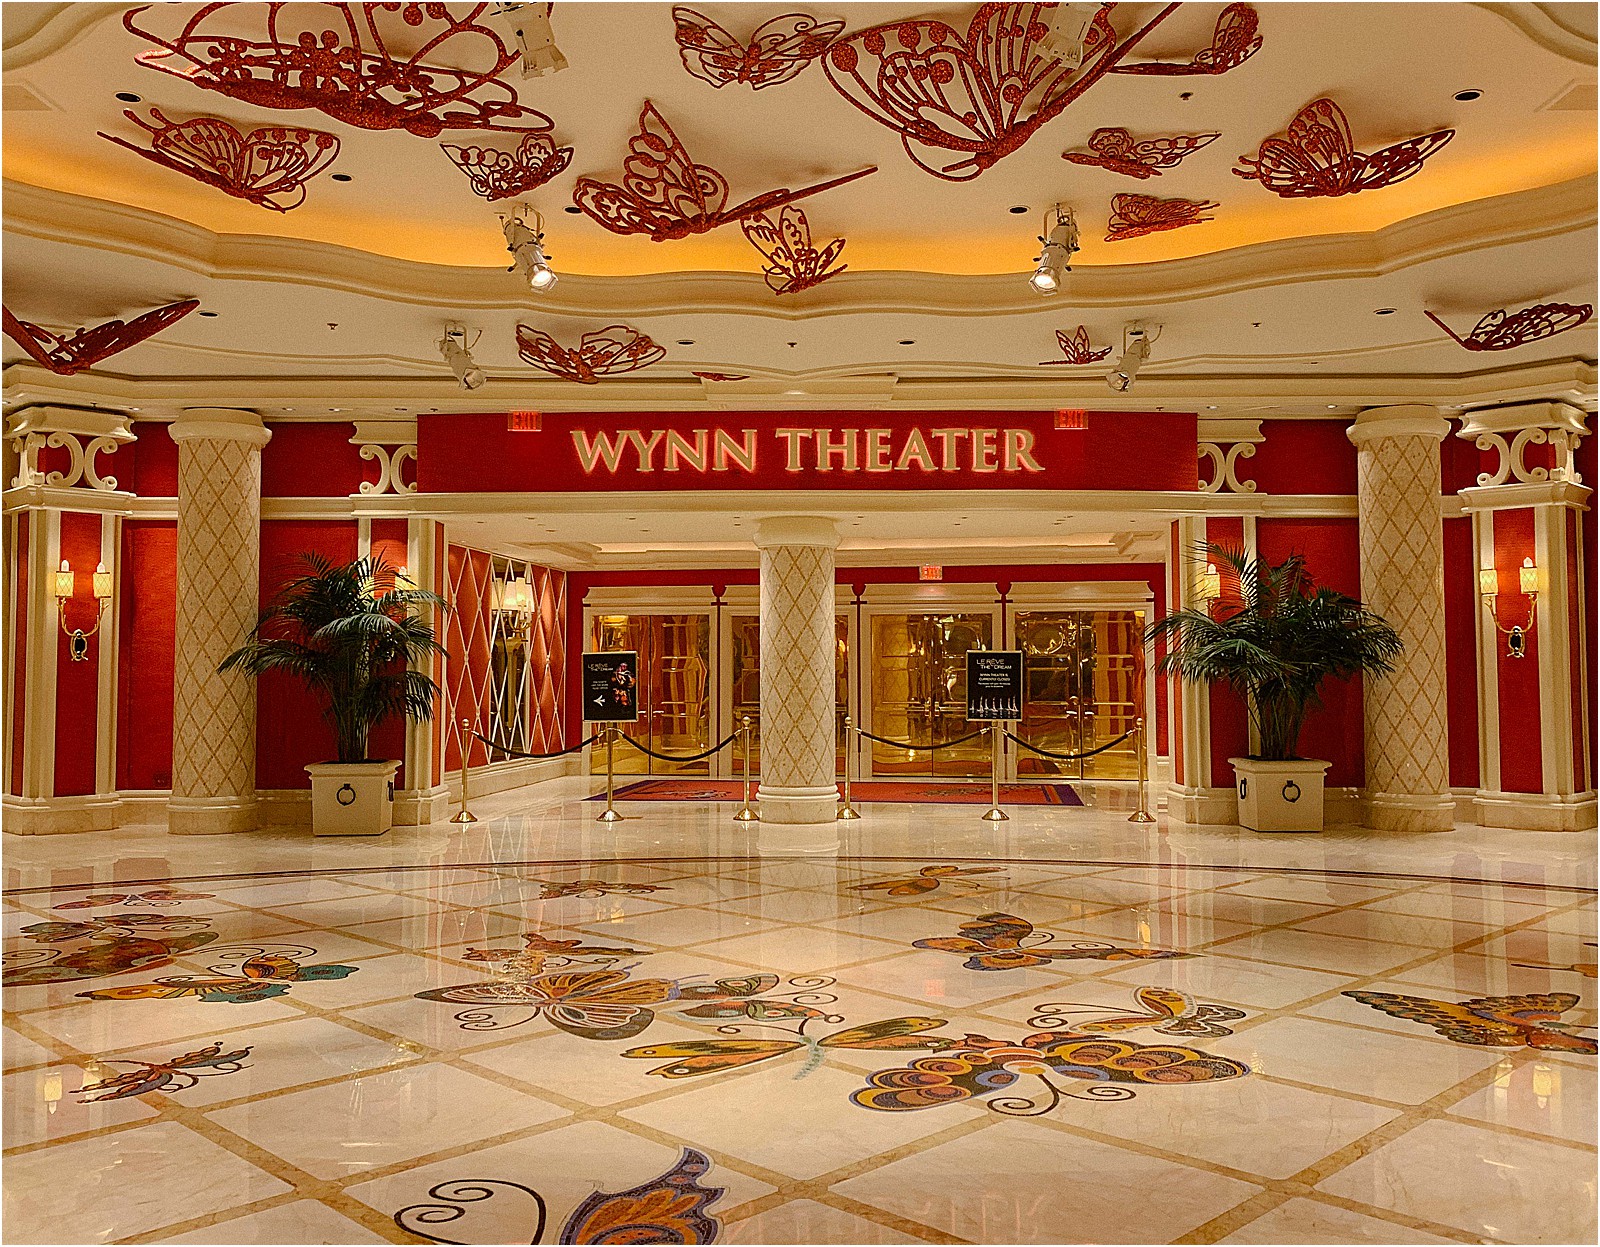 Wynn theater